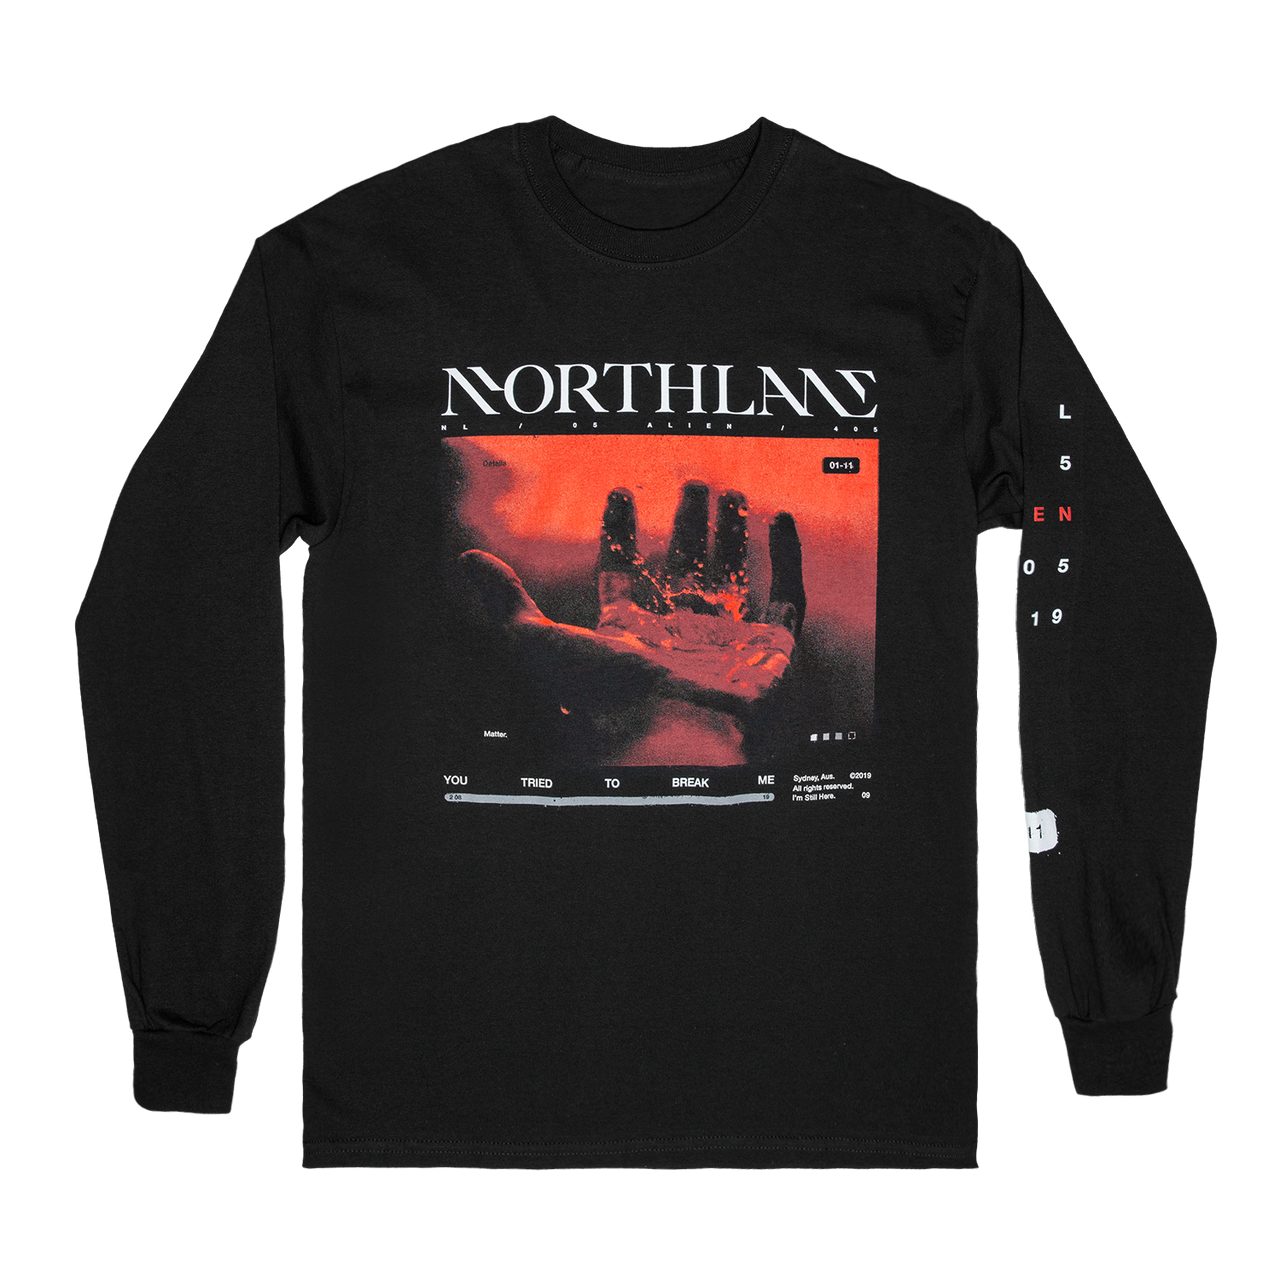 Northlane Details Matter Long Sleeve (Black)